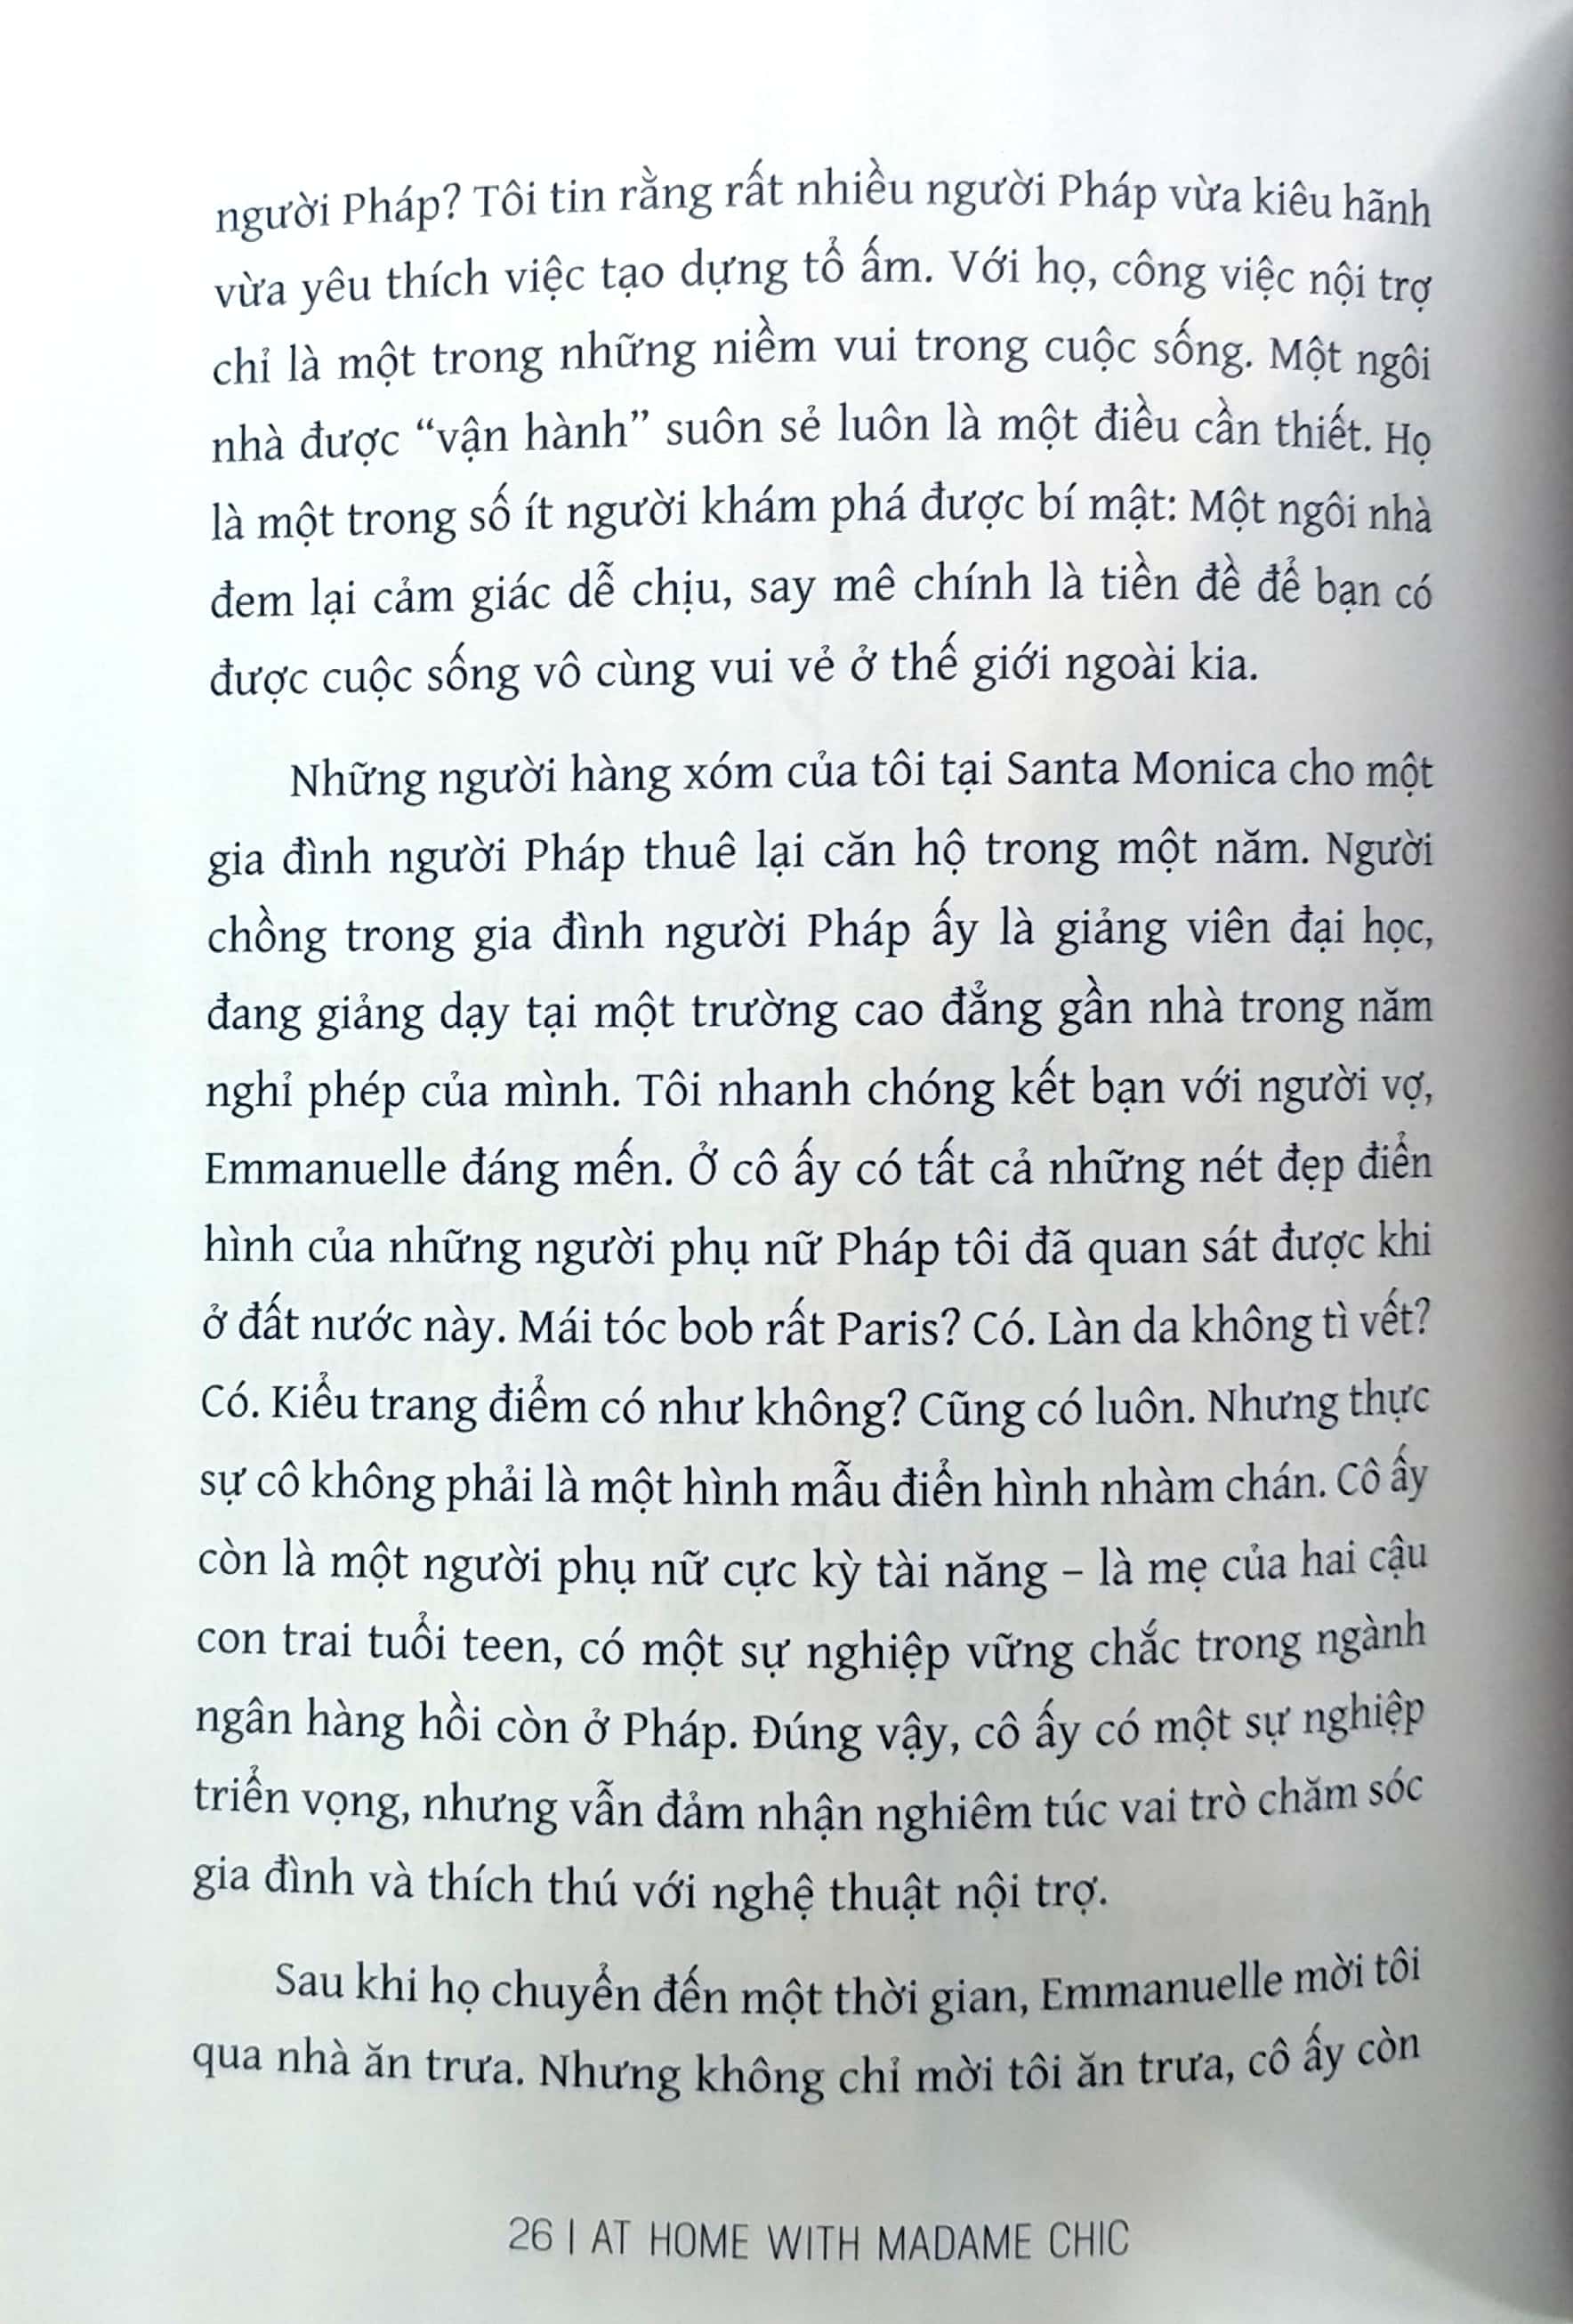 At Home With Madame Chic - Thanh Lịch Từ Những Khoảnh Khắc Đời Thường PDF